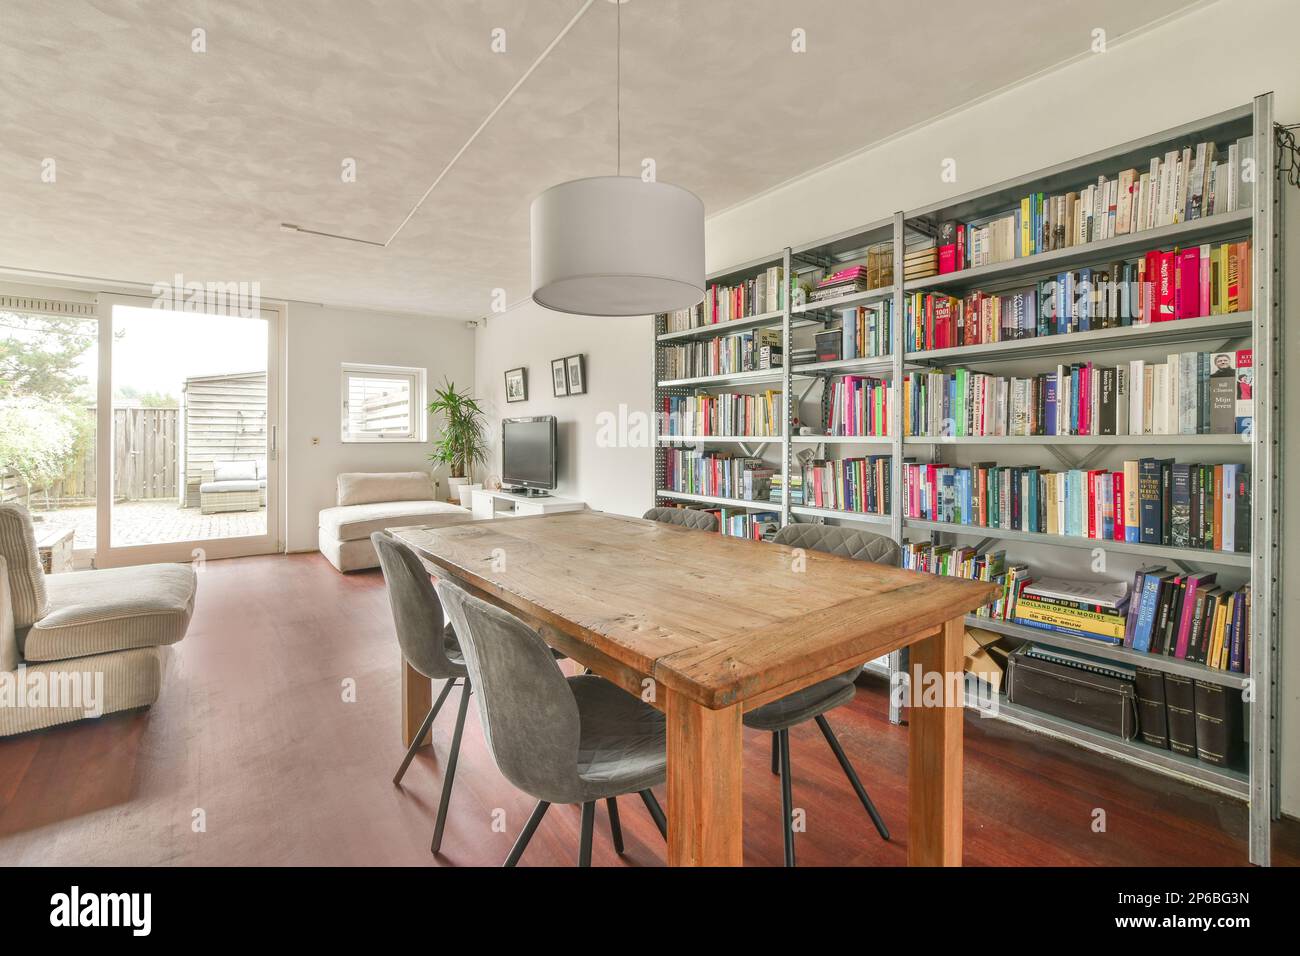 Amsterdam, pays-Bas - 10 avril 2021 : un salon avec de nombreux livres sur les étagères et une table en bois dans la salle est bien éclairé par la lumière du soleil Banque D'Images